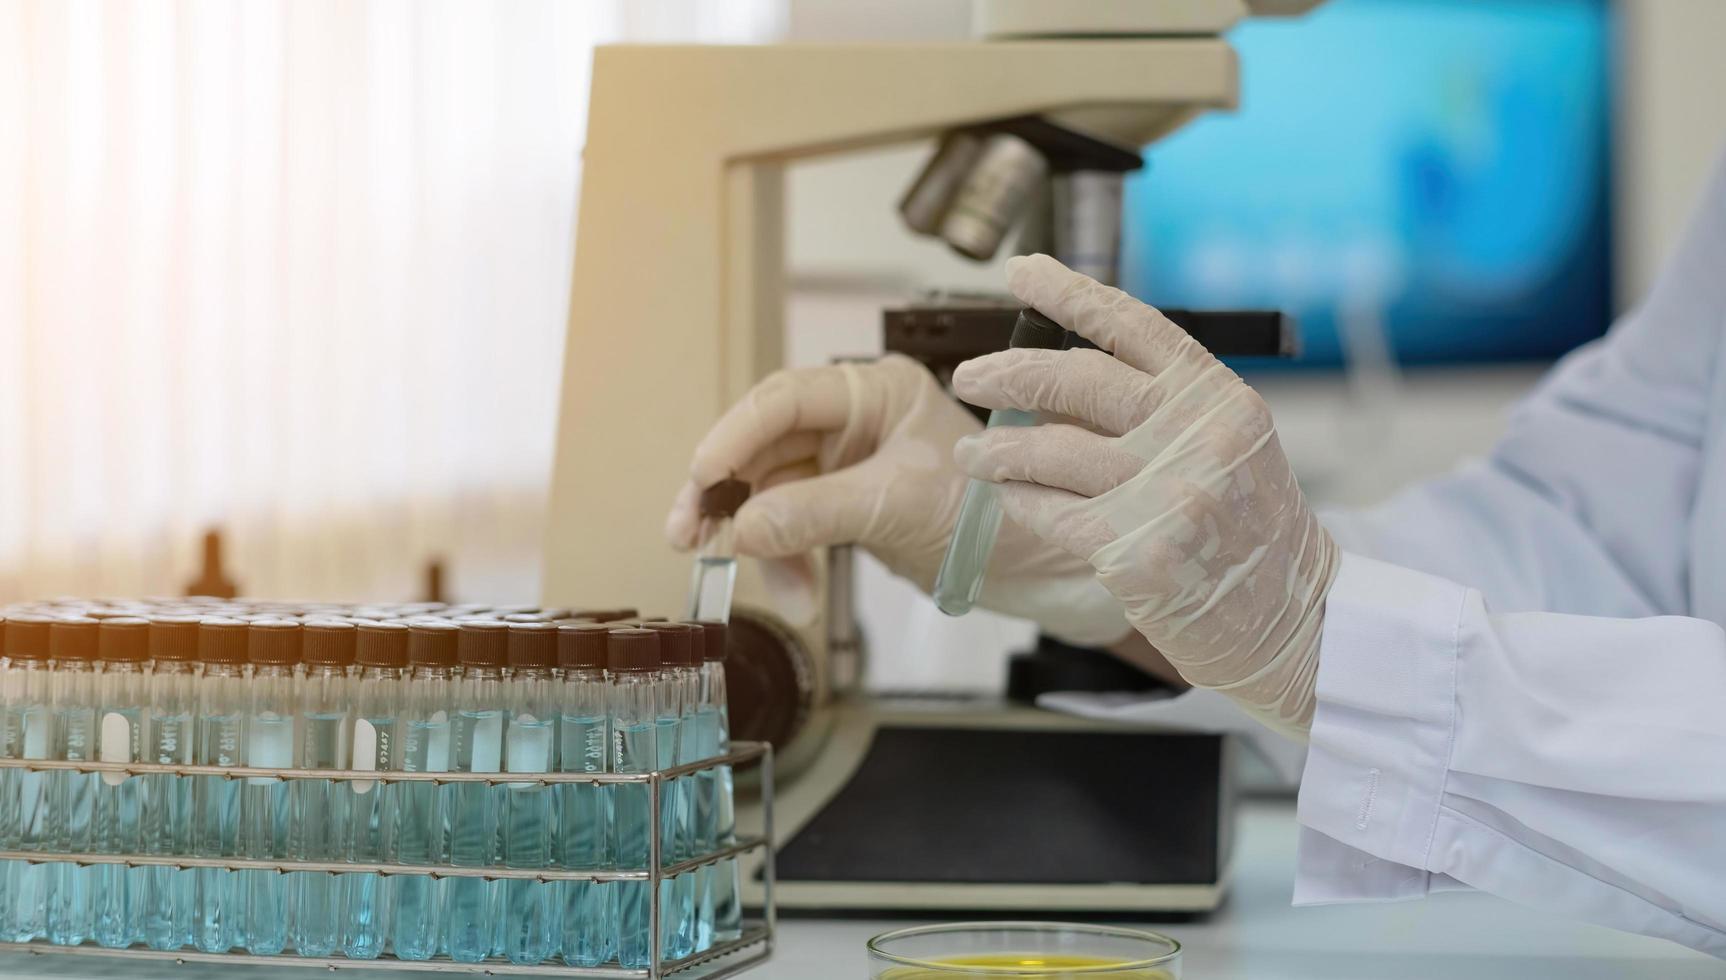 biokemi laboratorieforskning, kemist analyserar prov i laboratorium med mikroskoputrustning och vetenskapsexperiment glas som innehåller kemisk vätska. foto